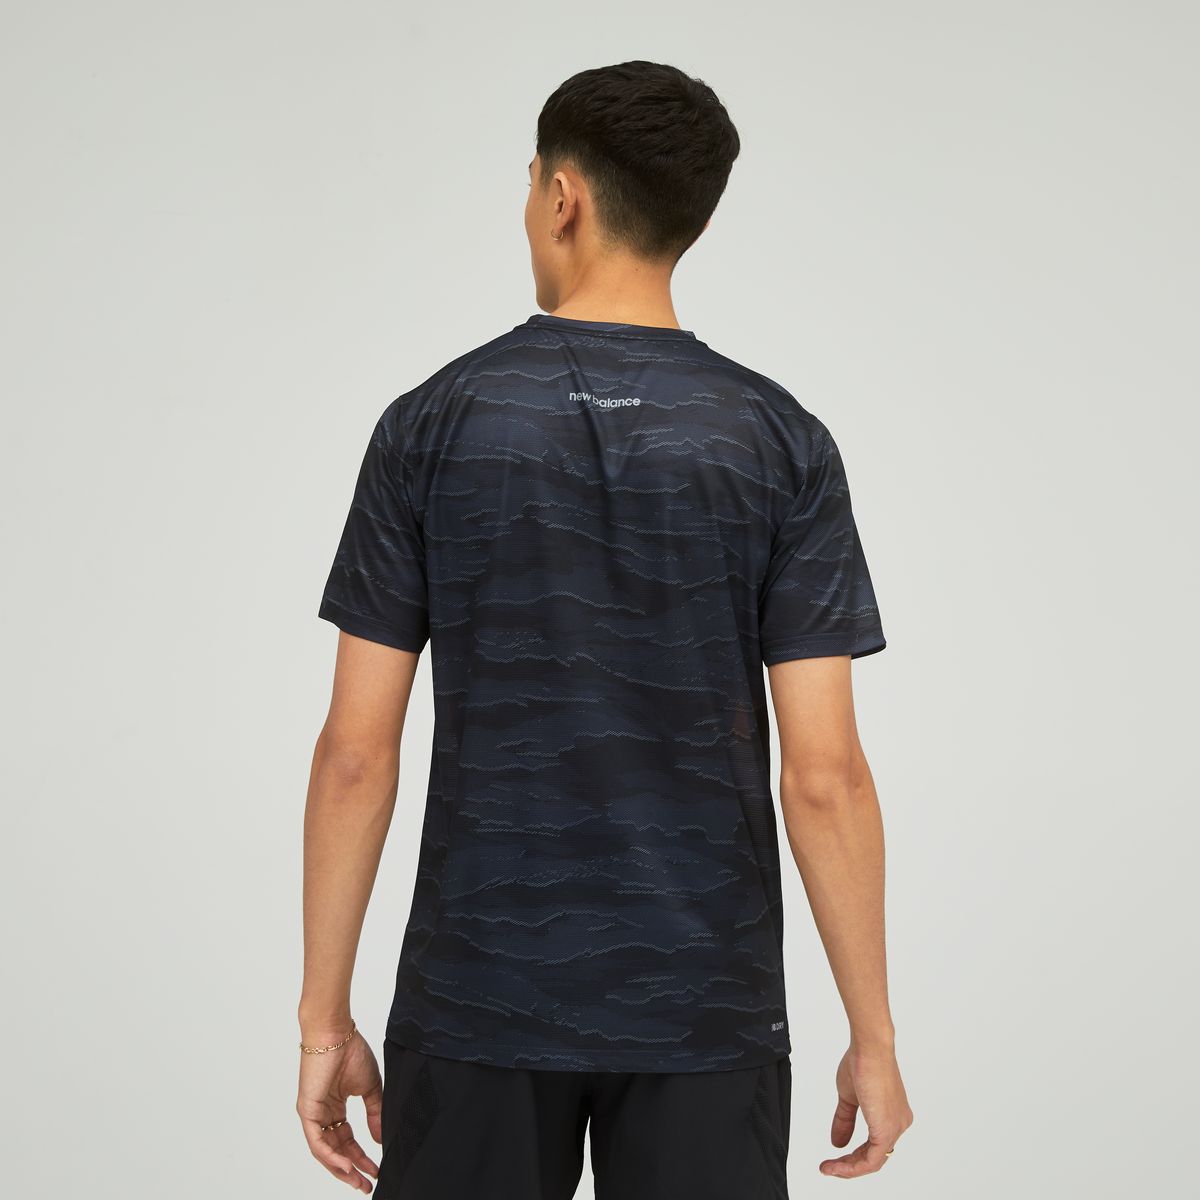 New Balance Striped Accelerate Short Sleeve Herren T-Shirt_2